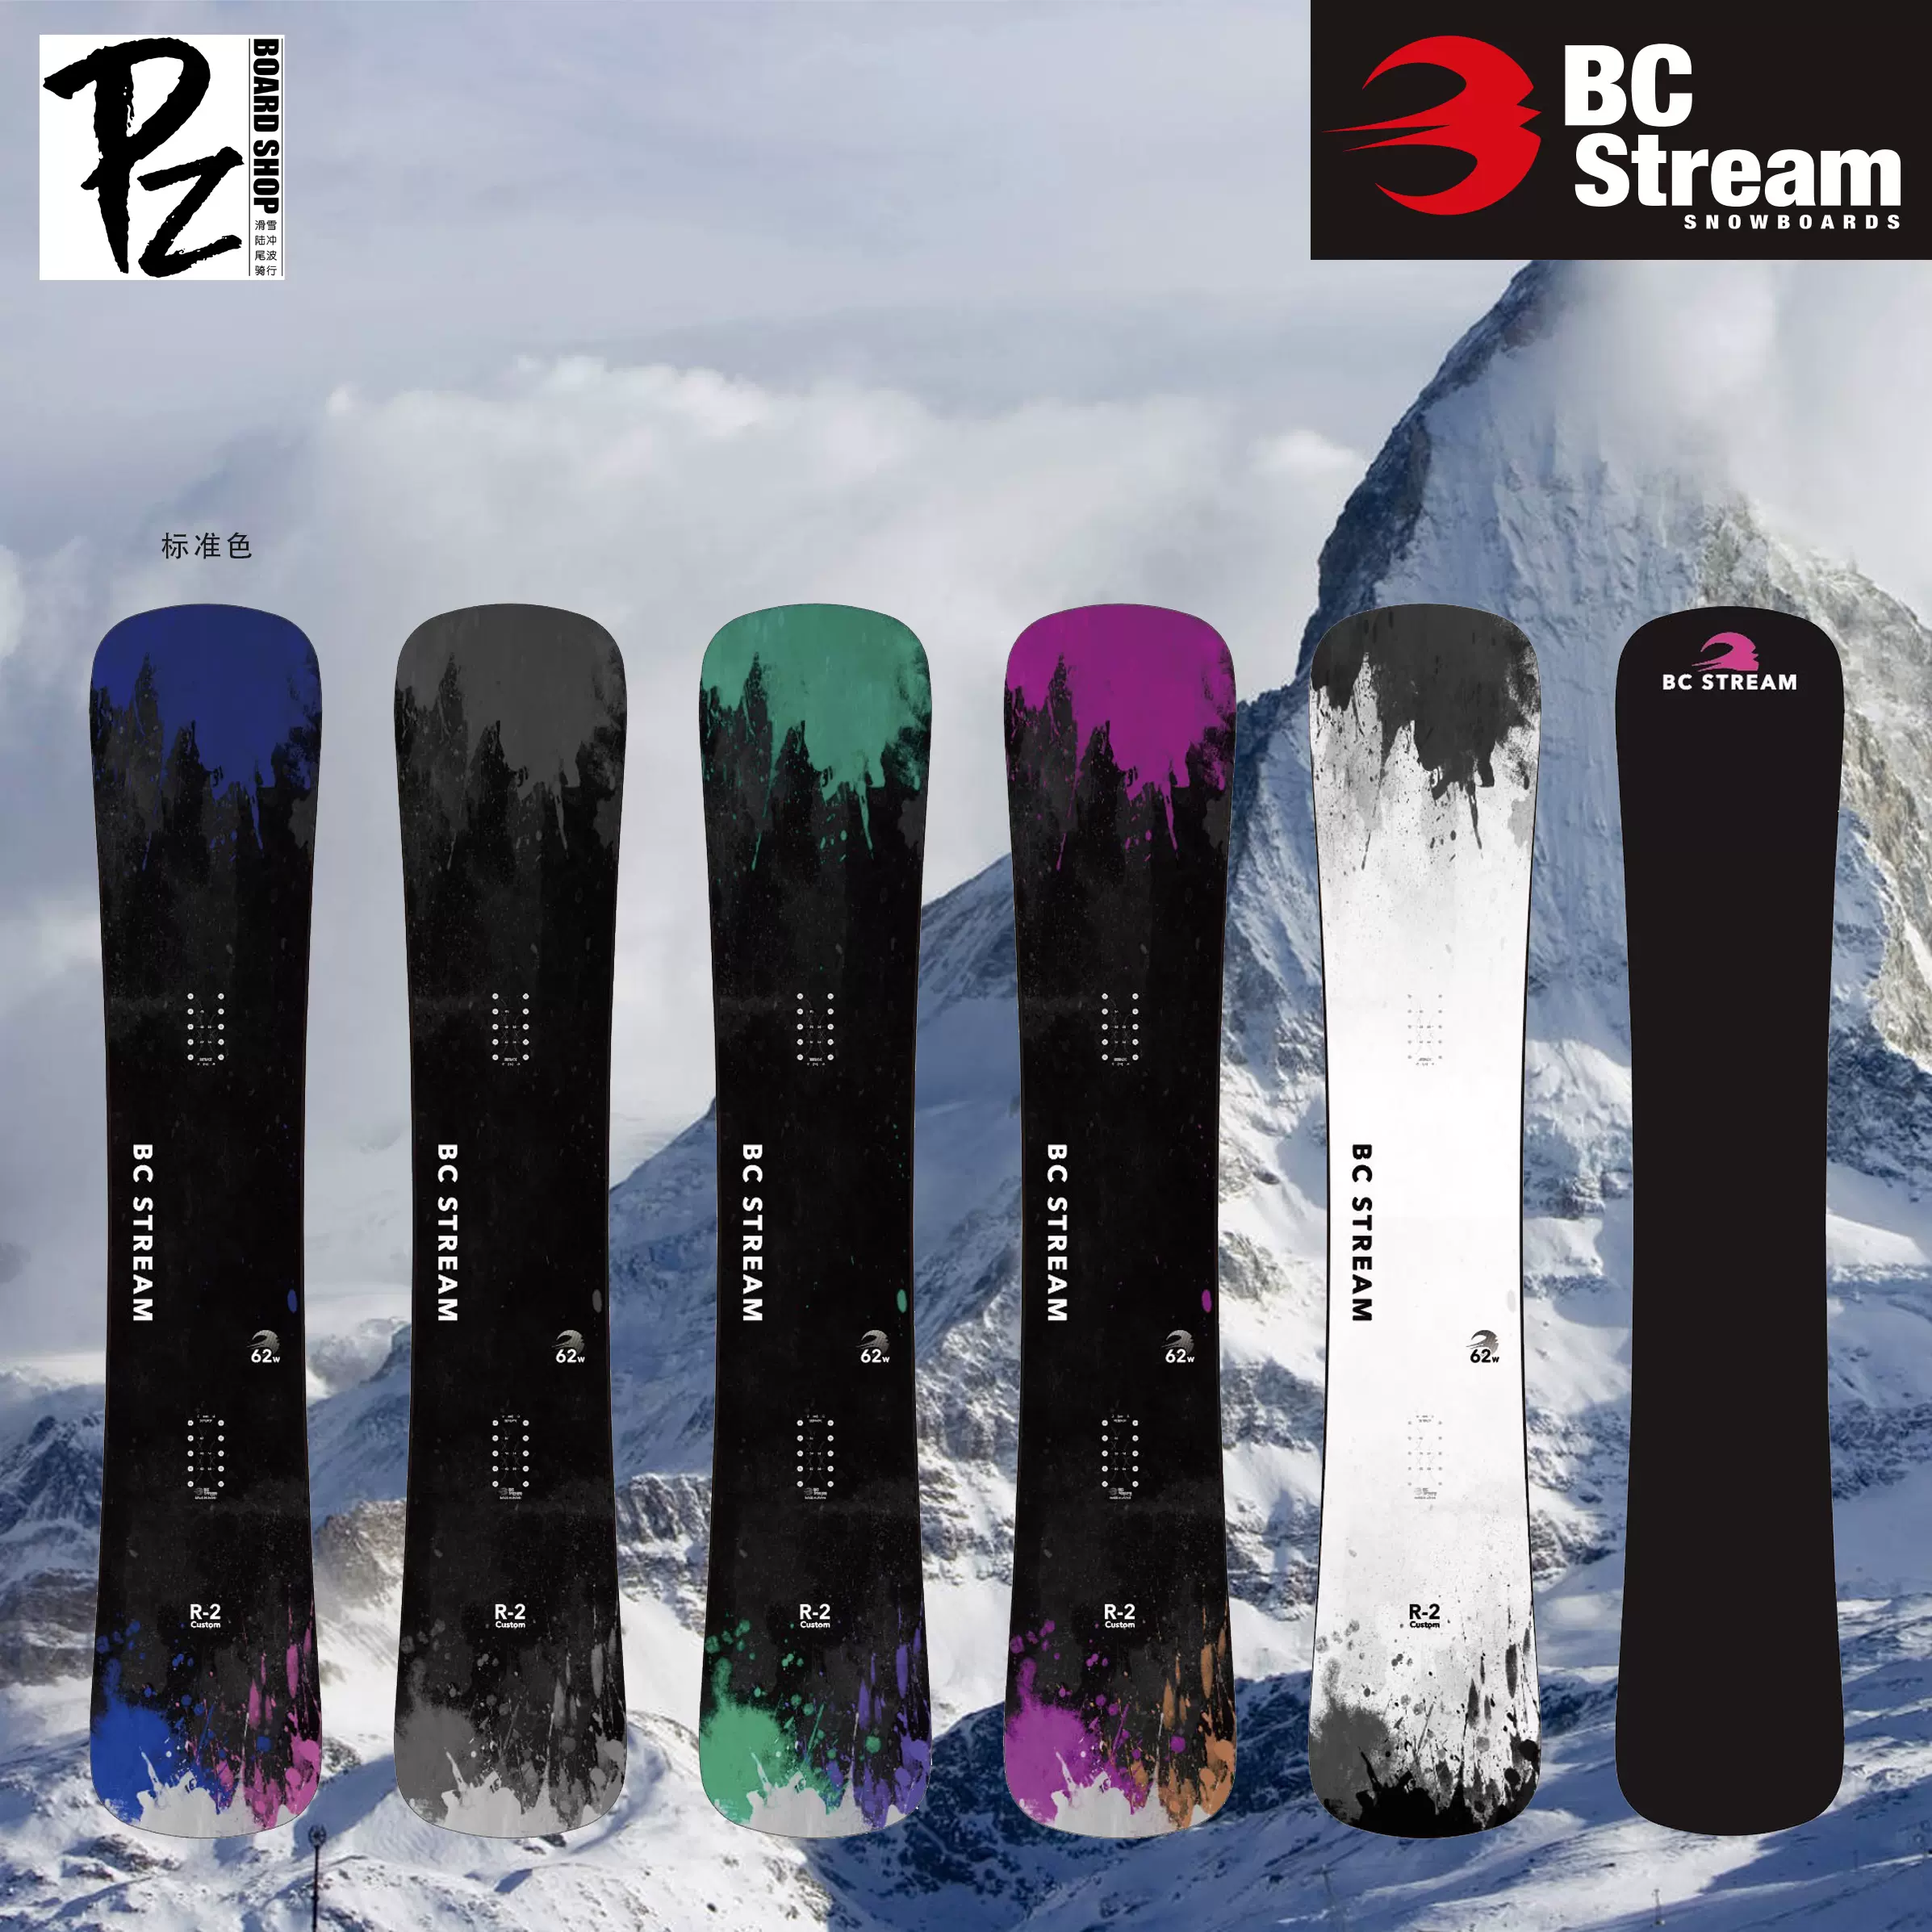 2324新款BC Stream滑雪板R2锤头板刻滑入门刻平技术滑行单板成人-Taobao